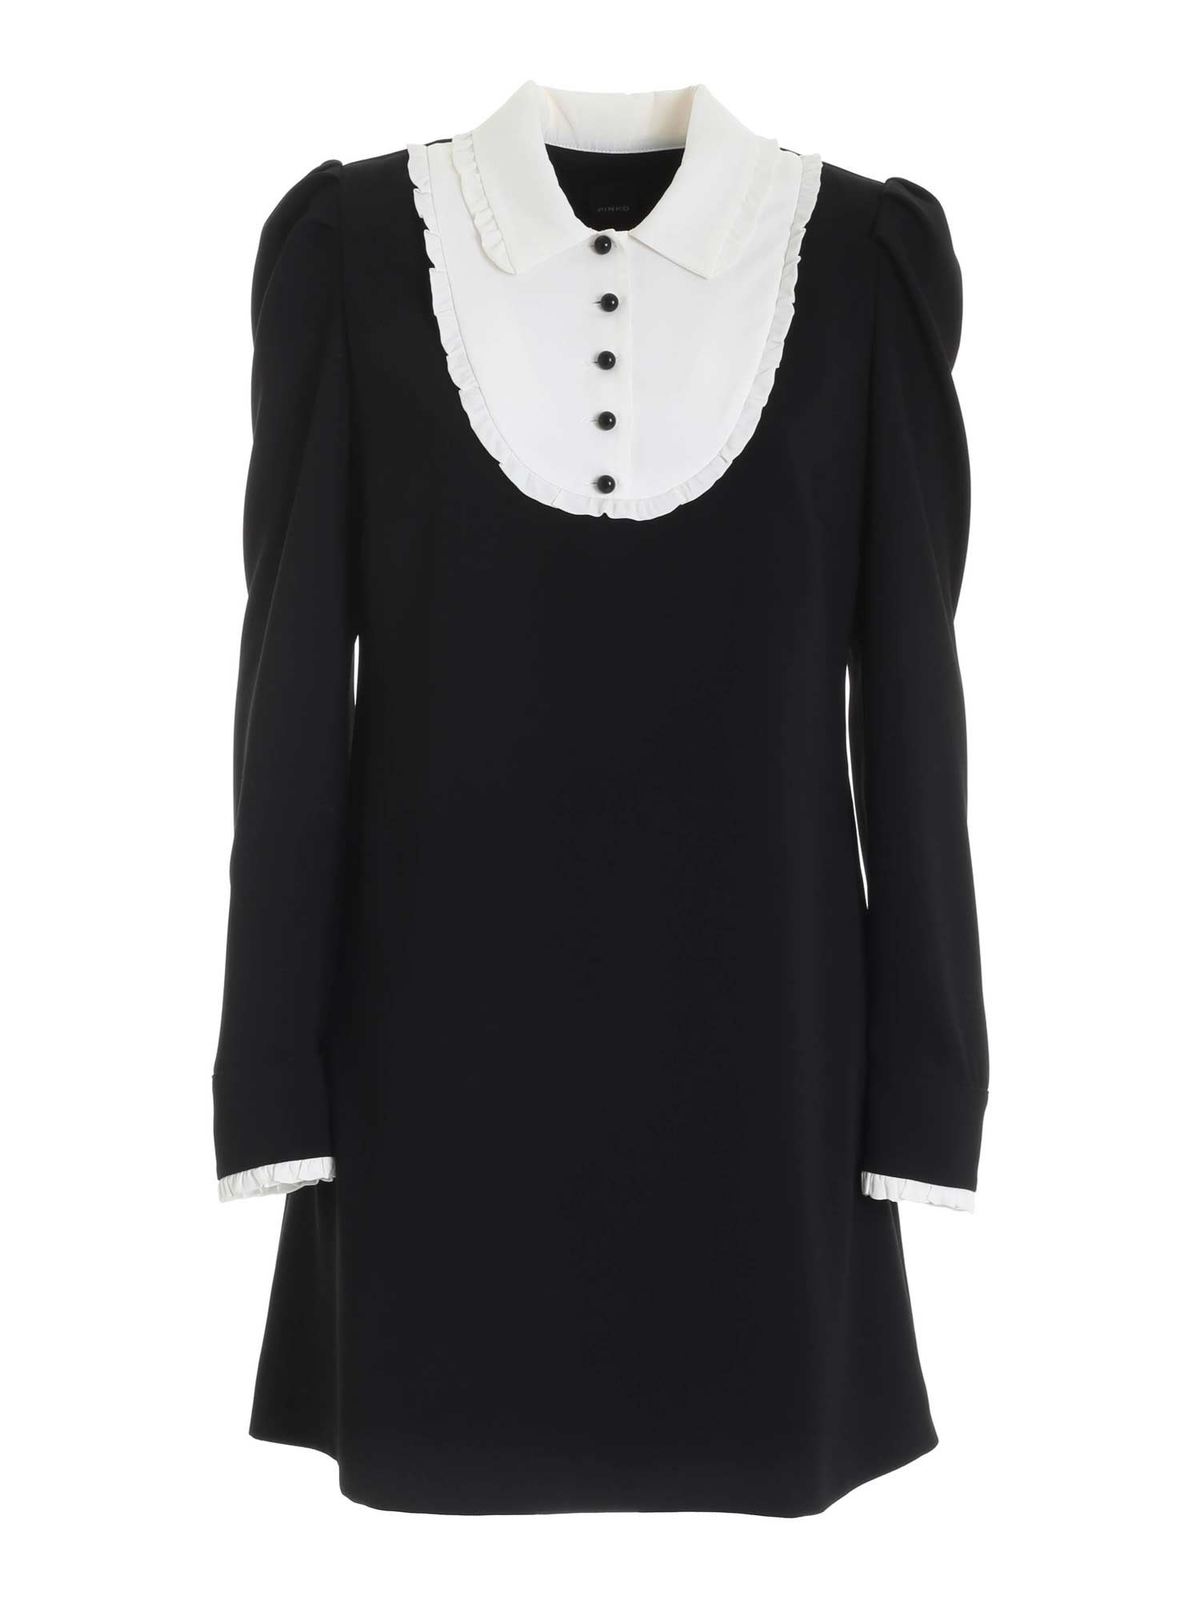 black and white jumper dress